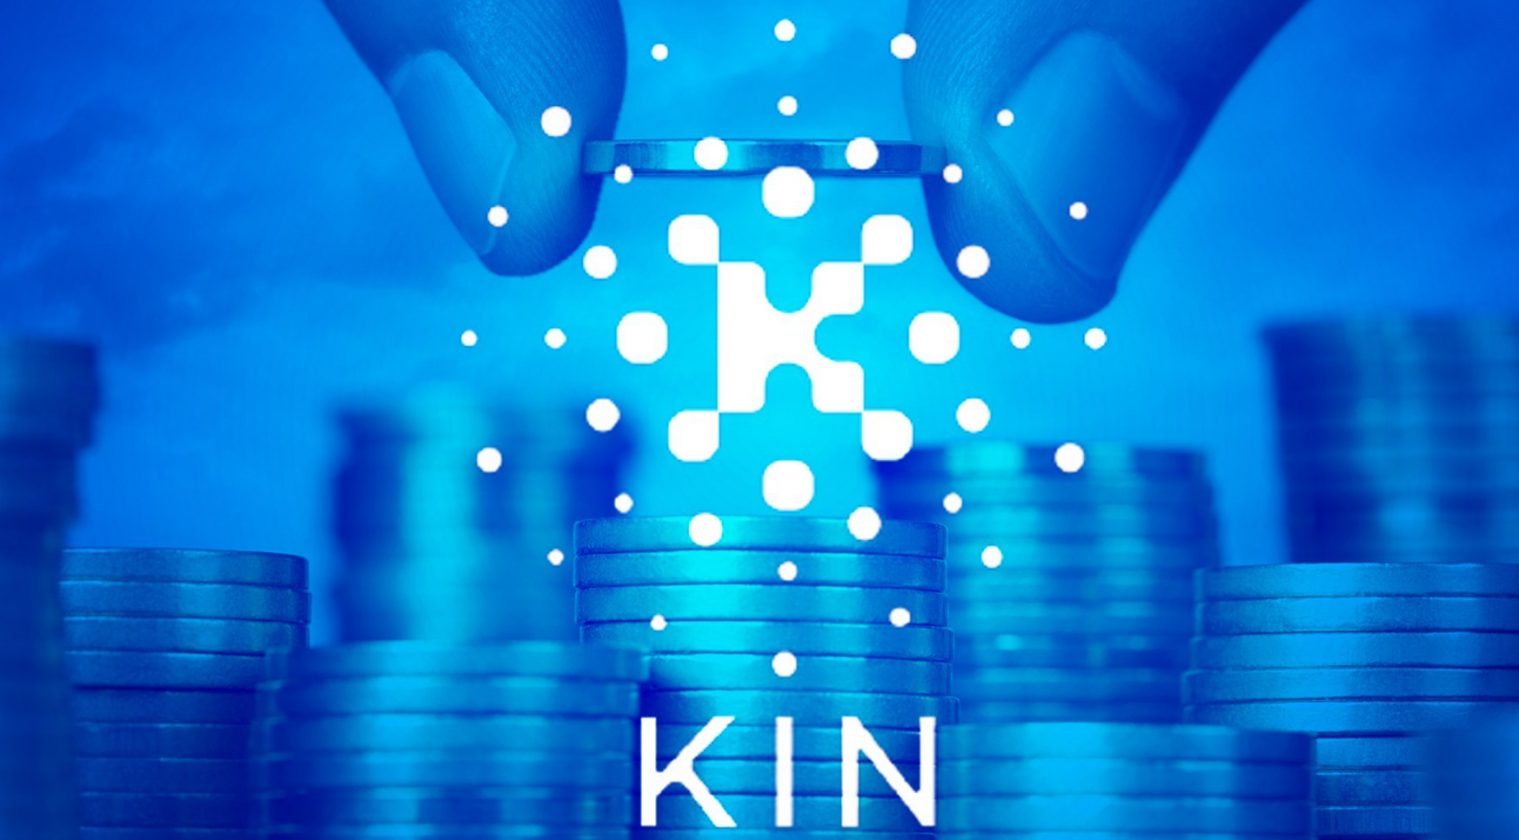 KIN tokeni için özel Blockchain'in avantajları